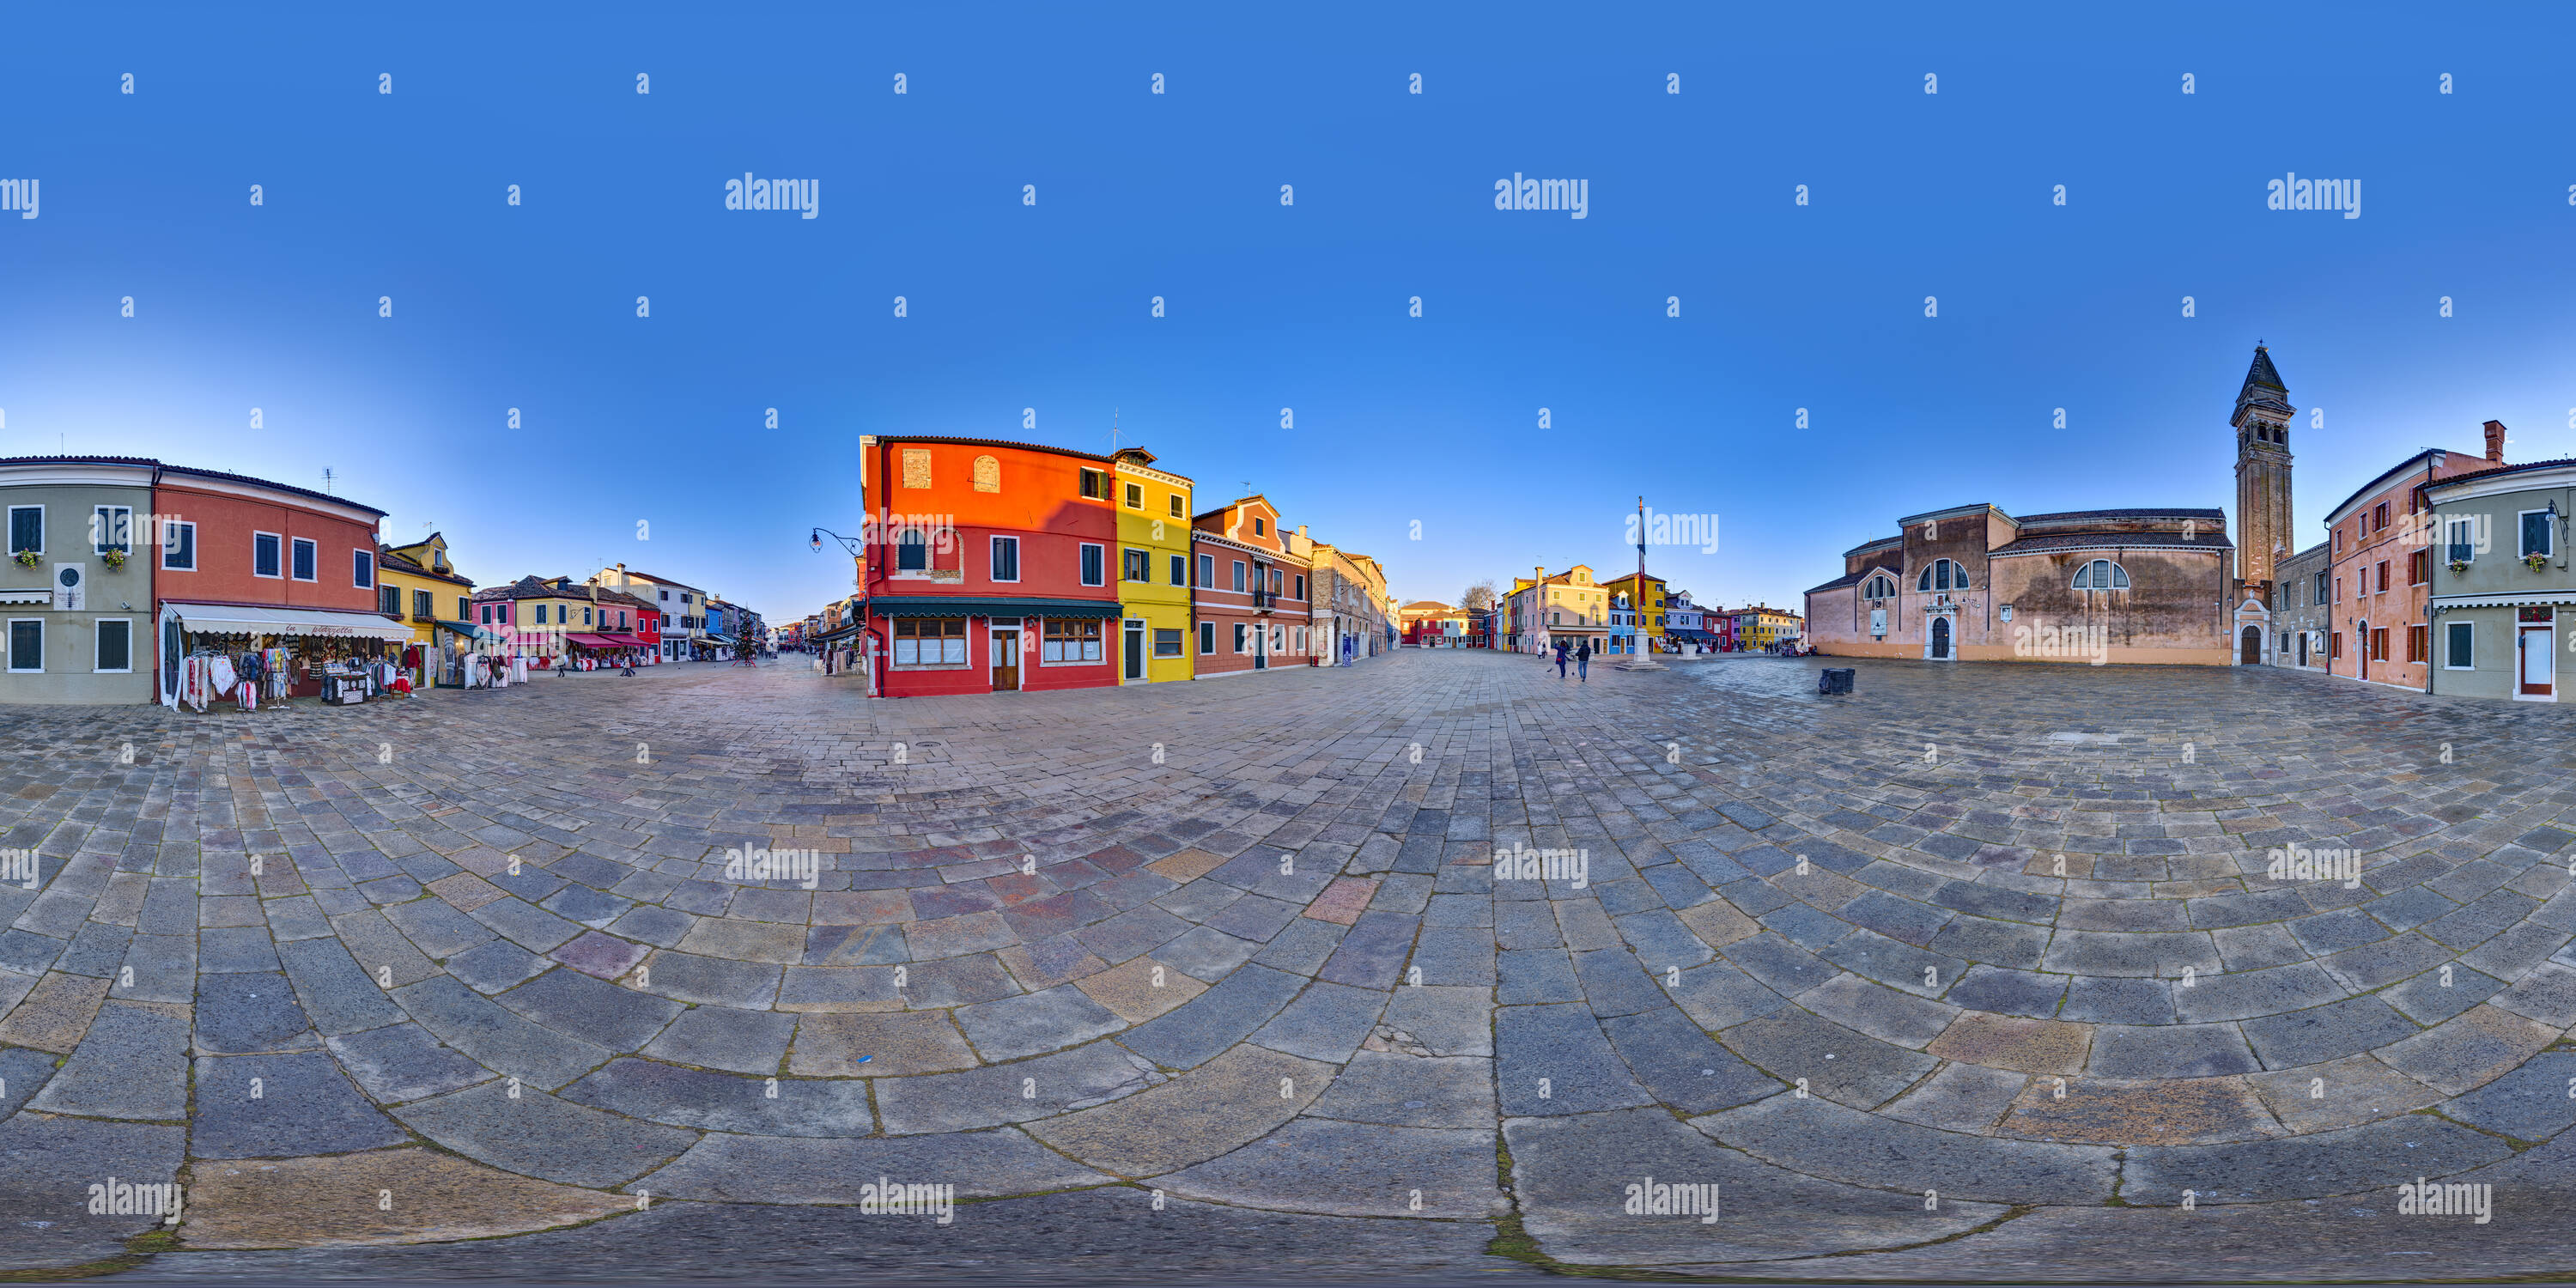 360 degree panoramic view of Piazza Baldassare Galuppi, Burano, Venice, Italy